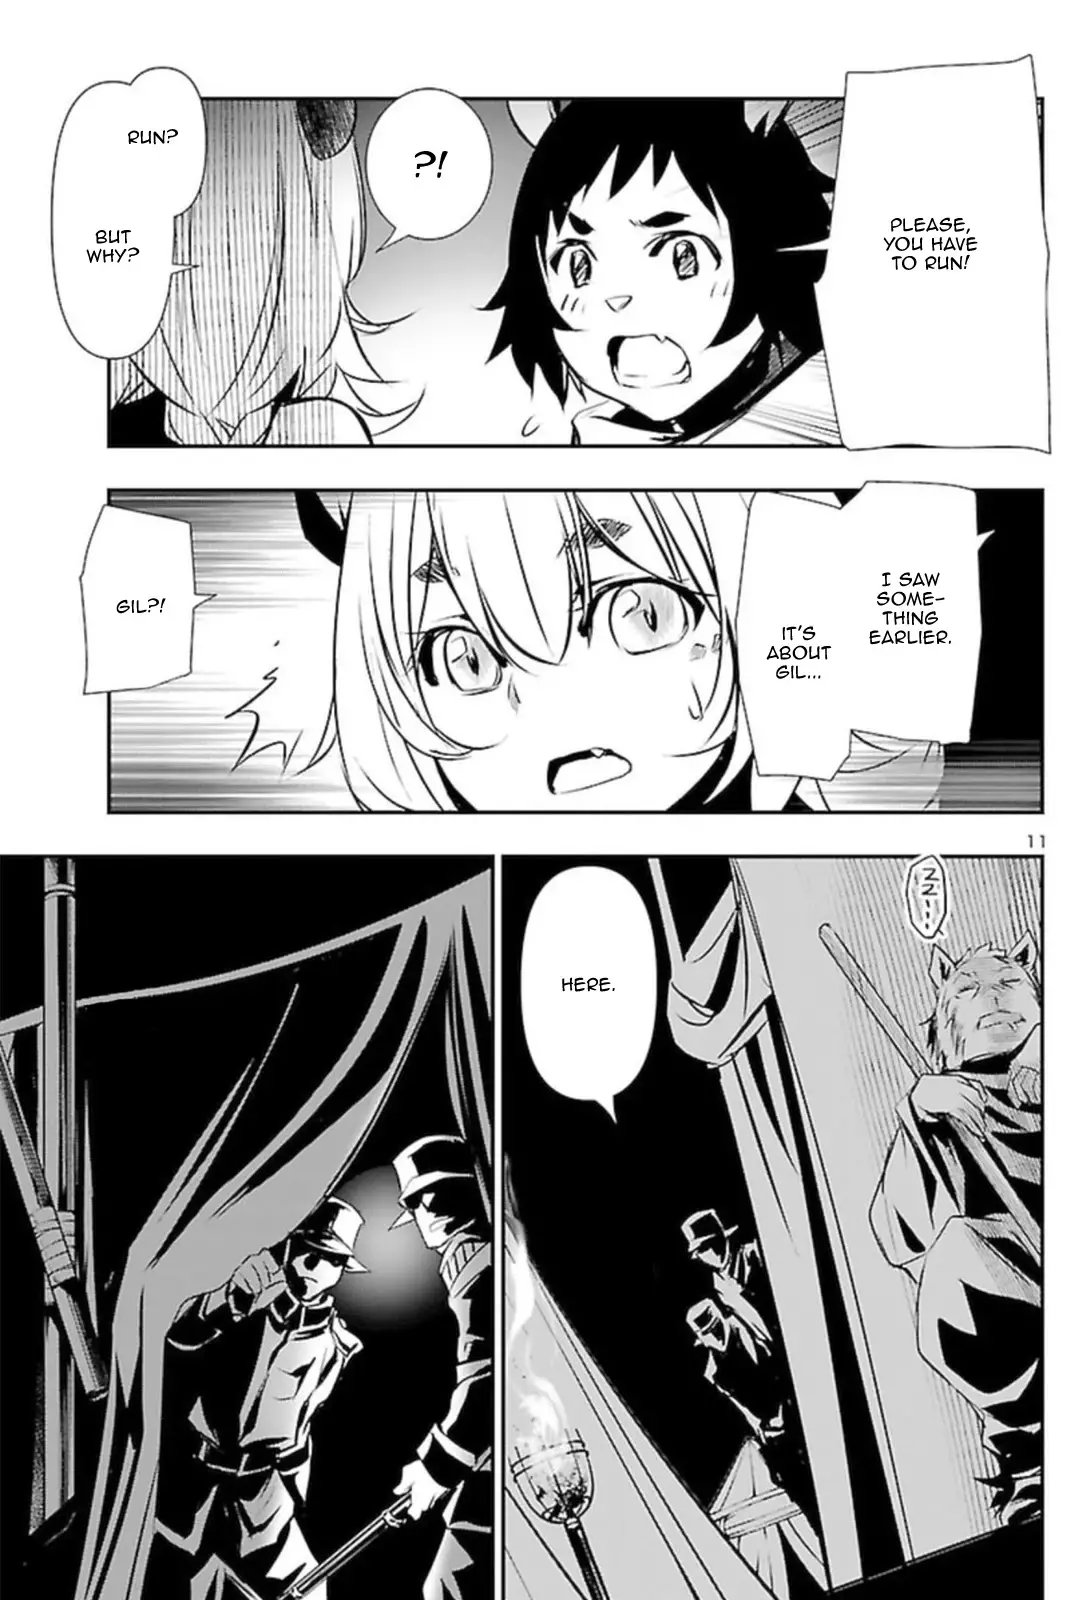 Shinju no Nectar - 55 page 10